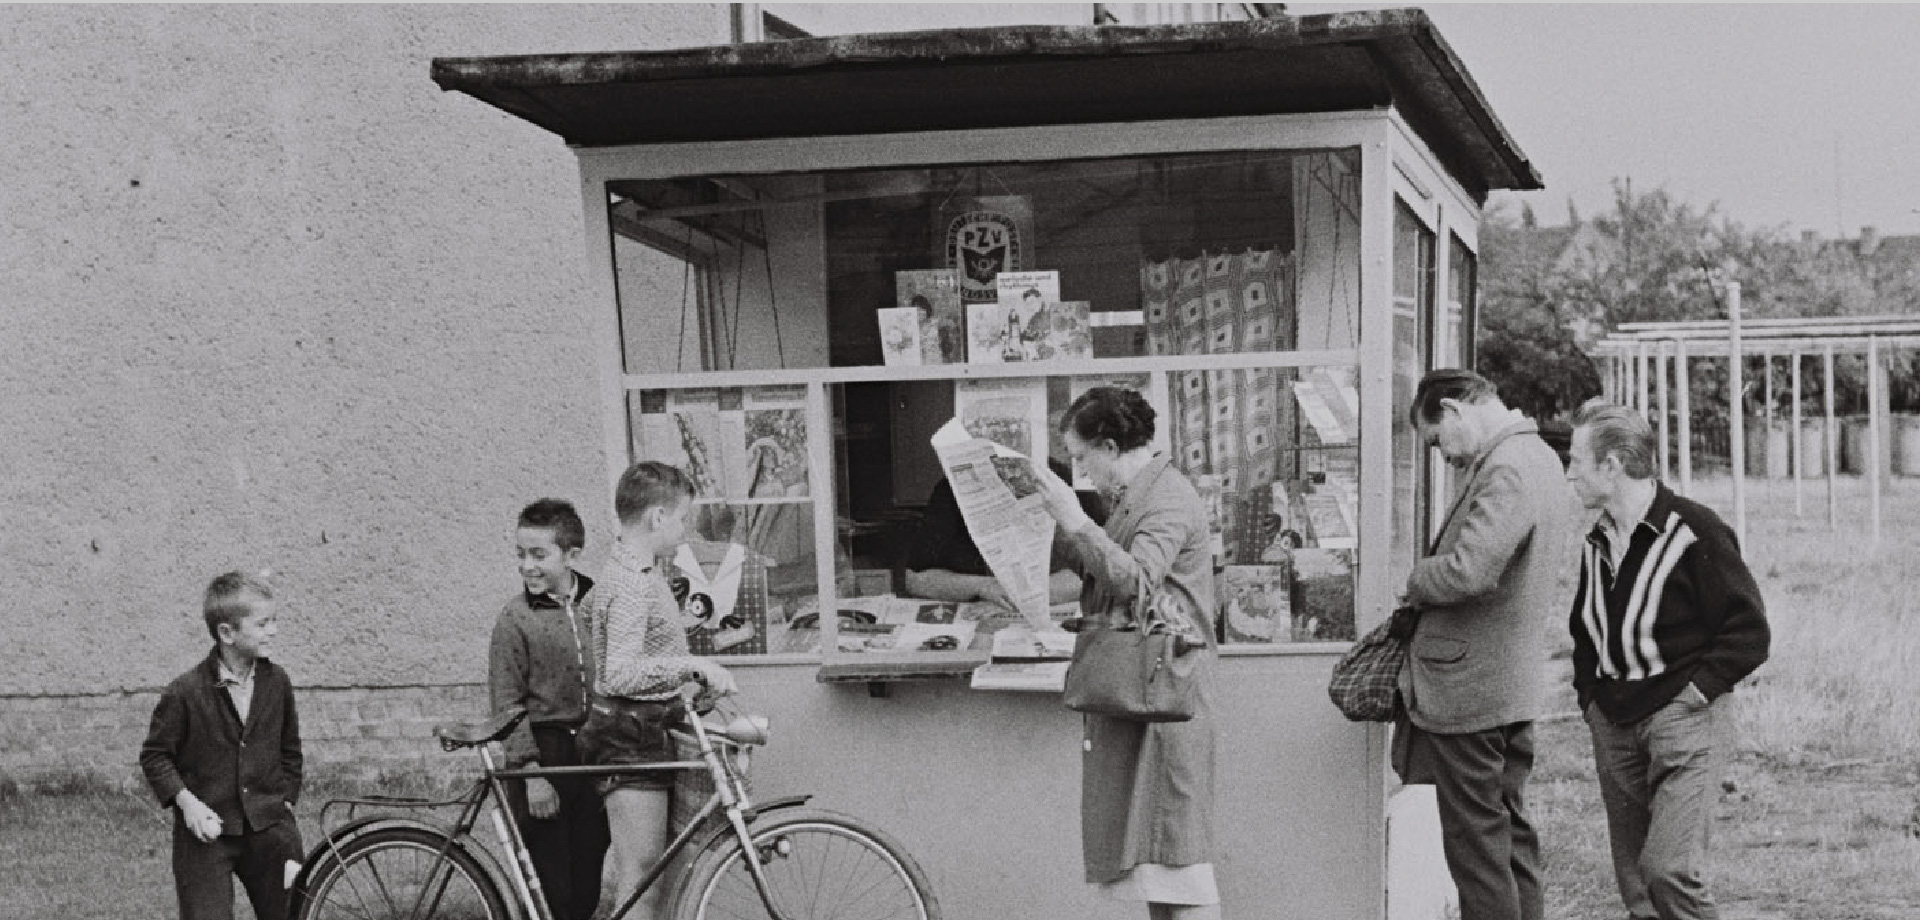 Ein Kiosk vor dem Menschen stehen, Erwachsene und Kinder. Eine Frau liest Zeitung